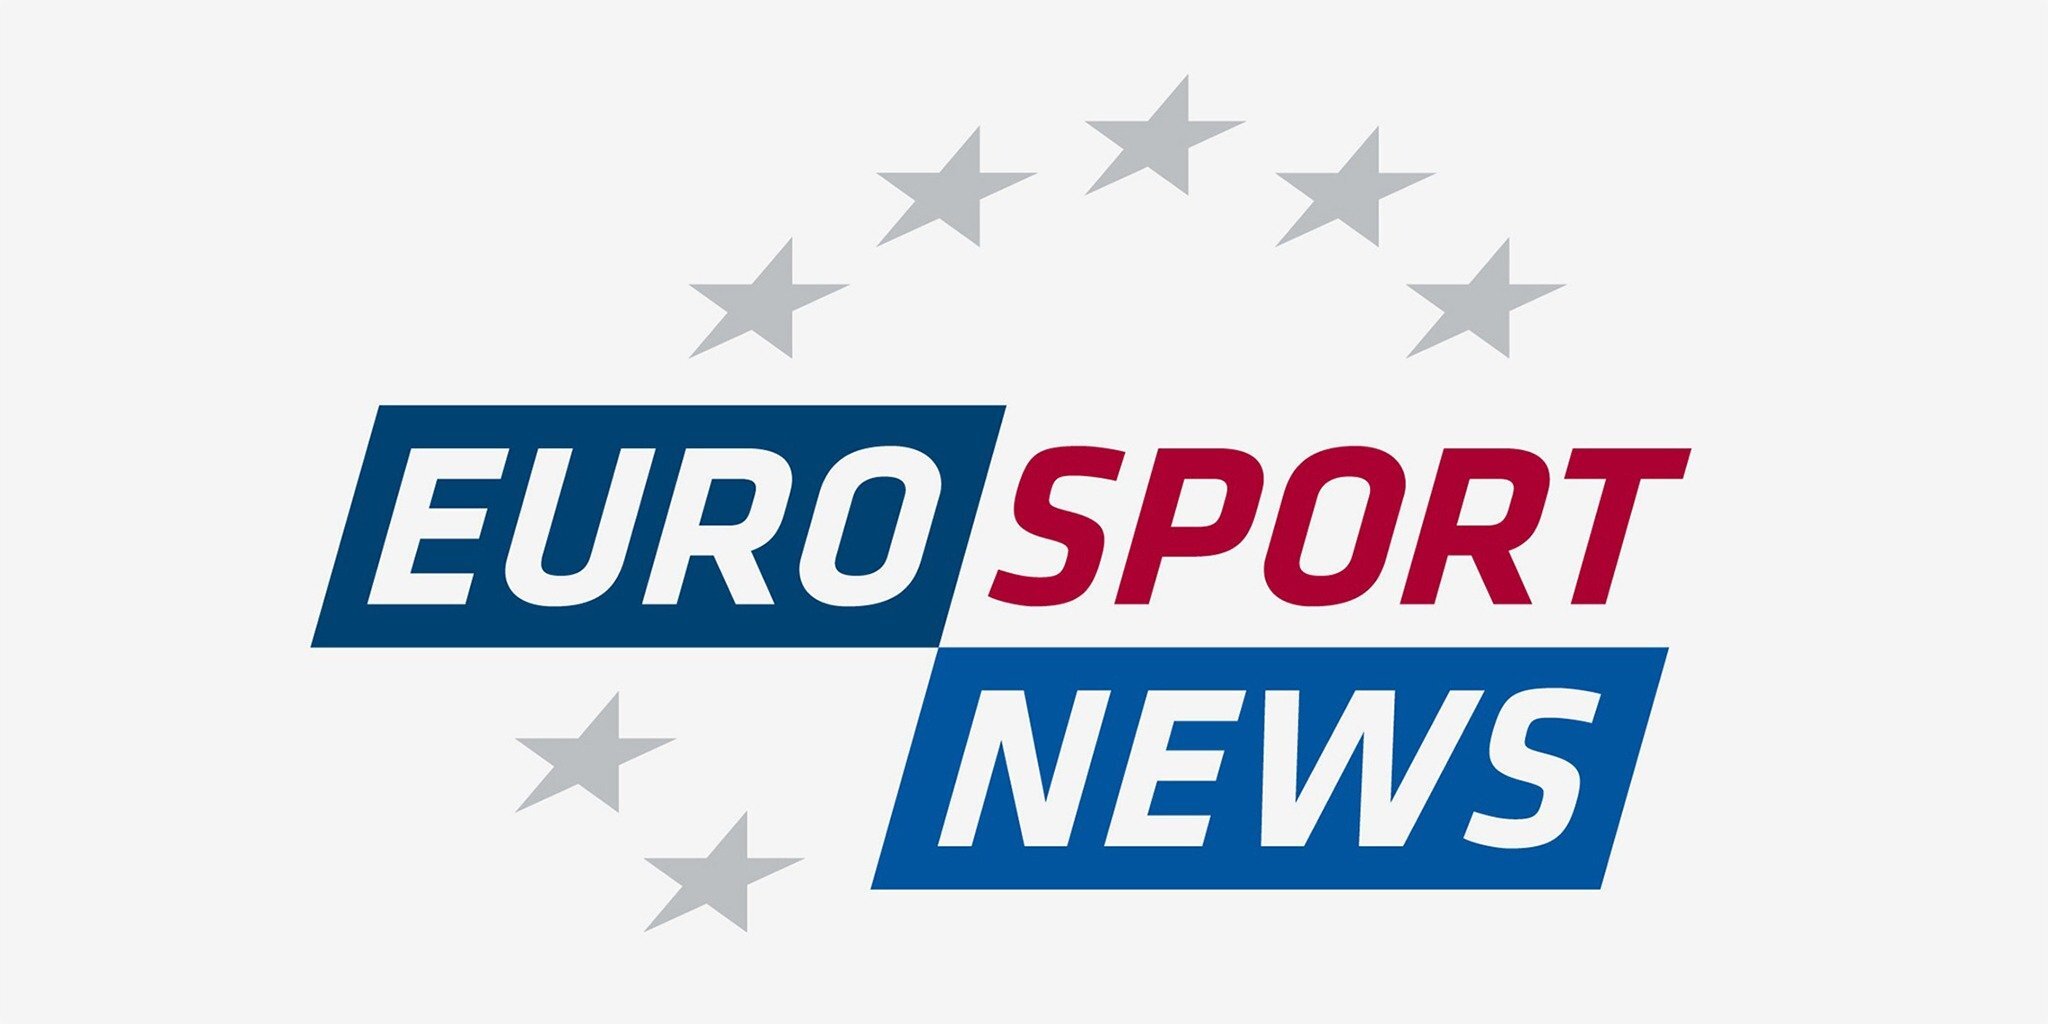 Тв спортивный телеканал. Спортивные каналы. Канал Евроспорт. Eurosport News Телеканал. Телеканал Евроспорт логотип.